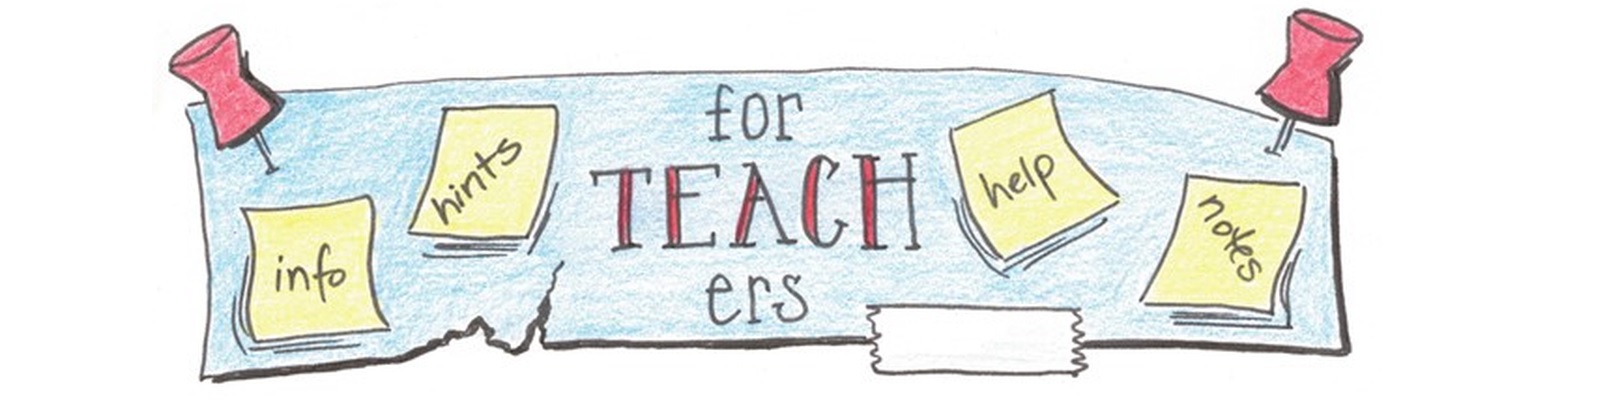 Banner - For teachers